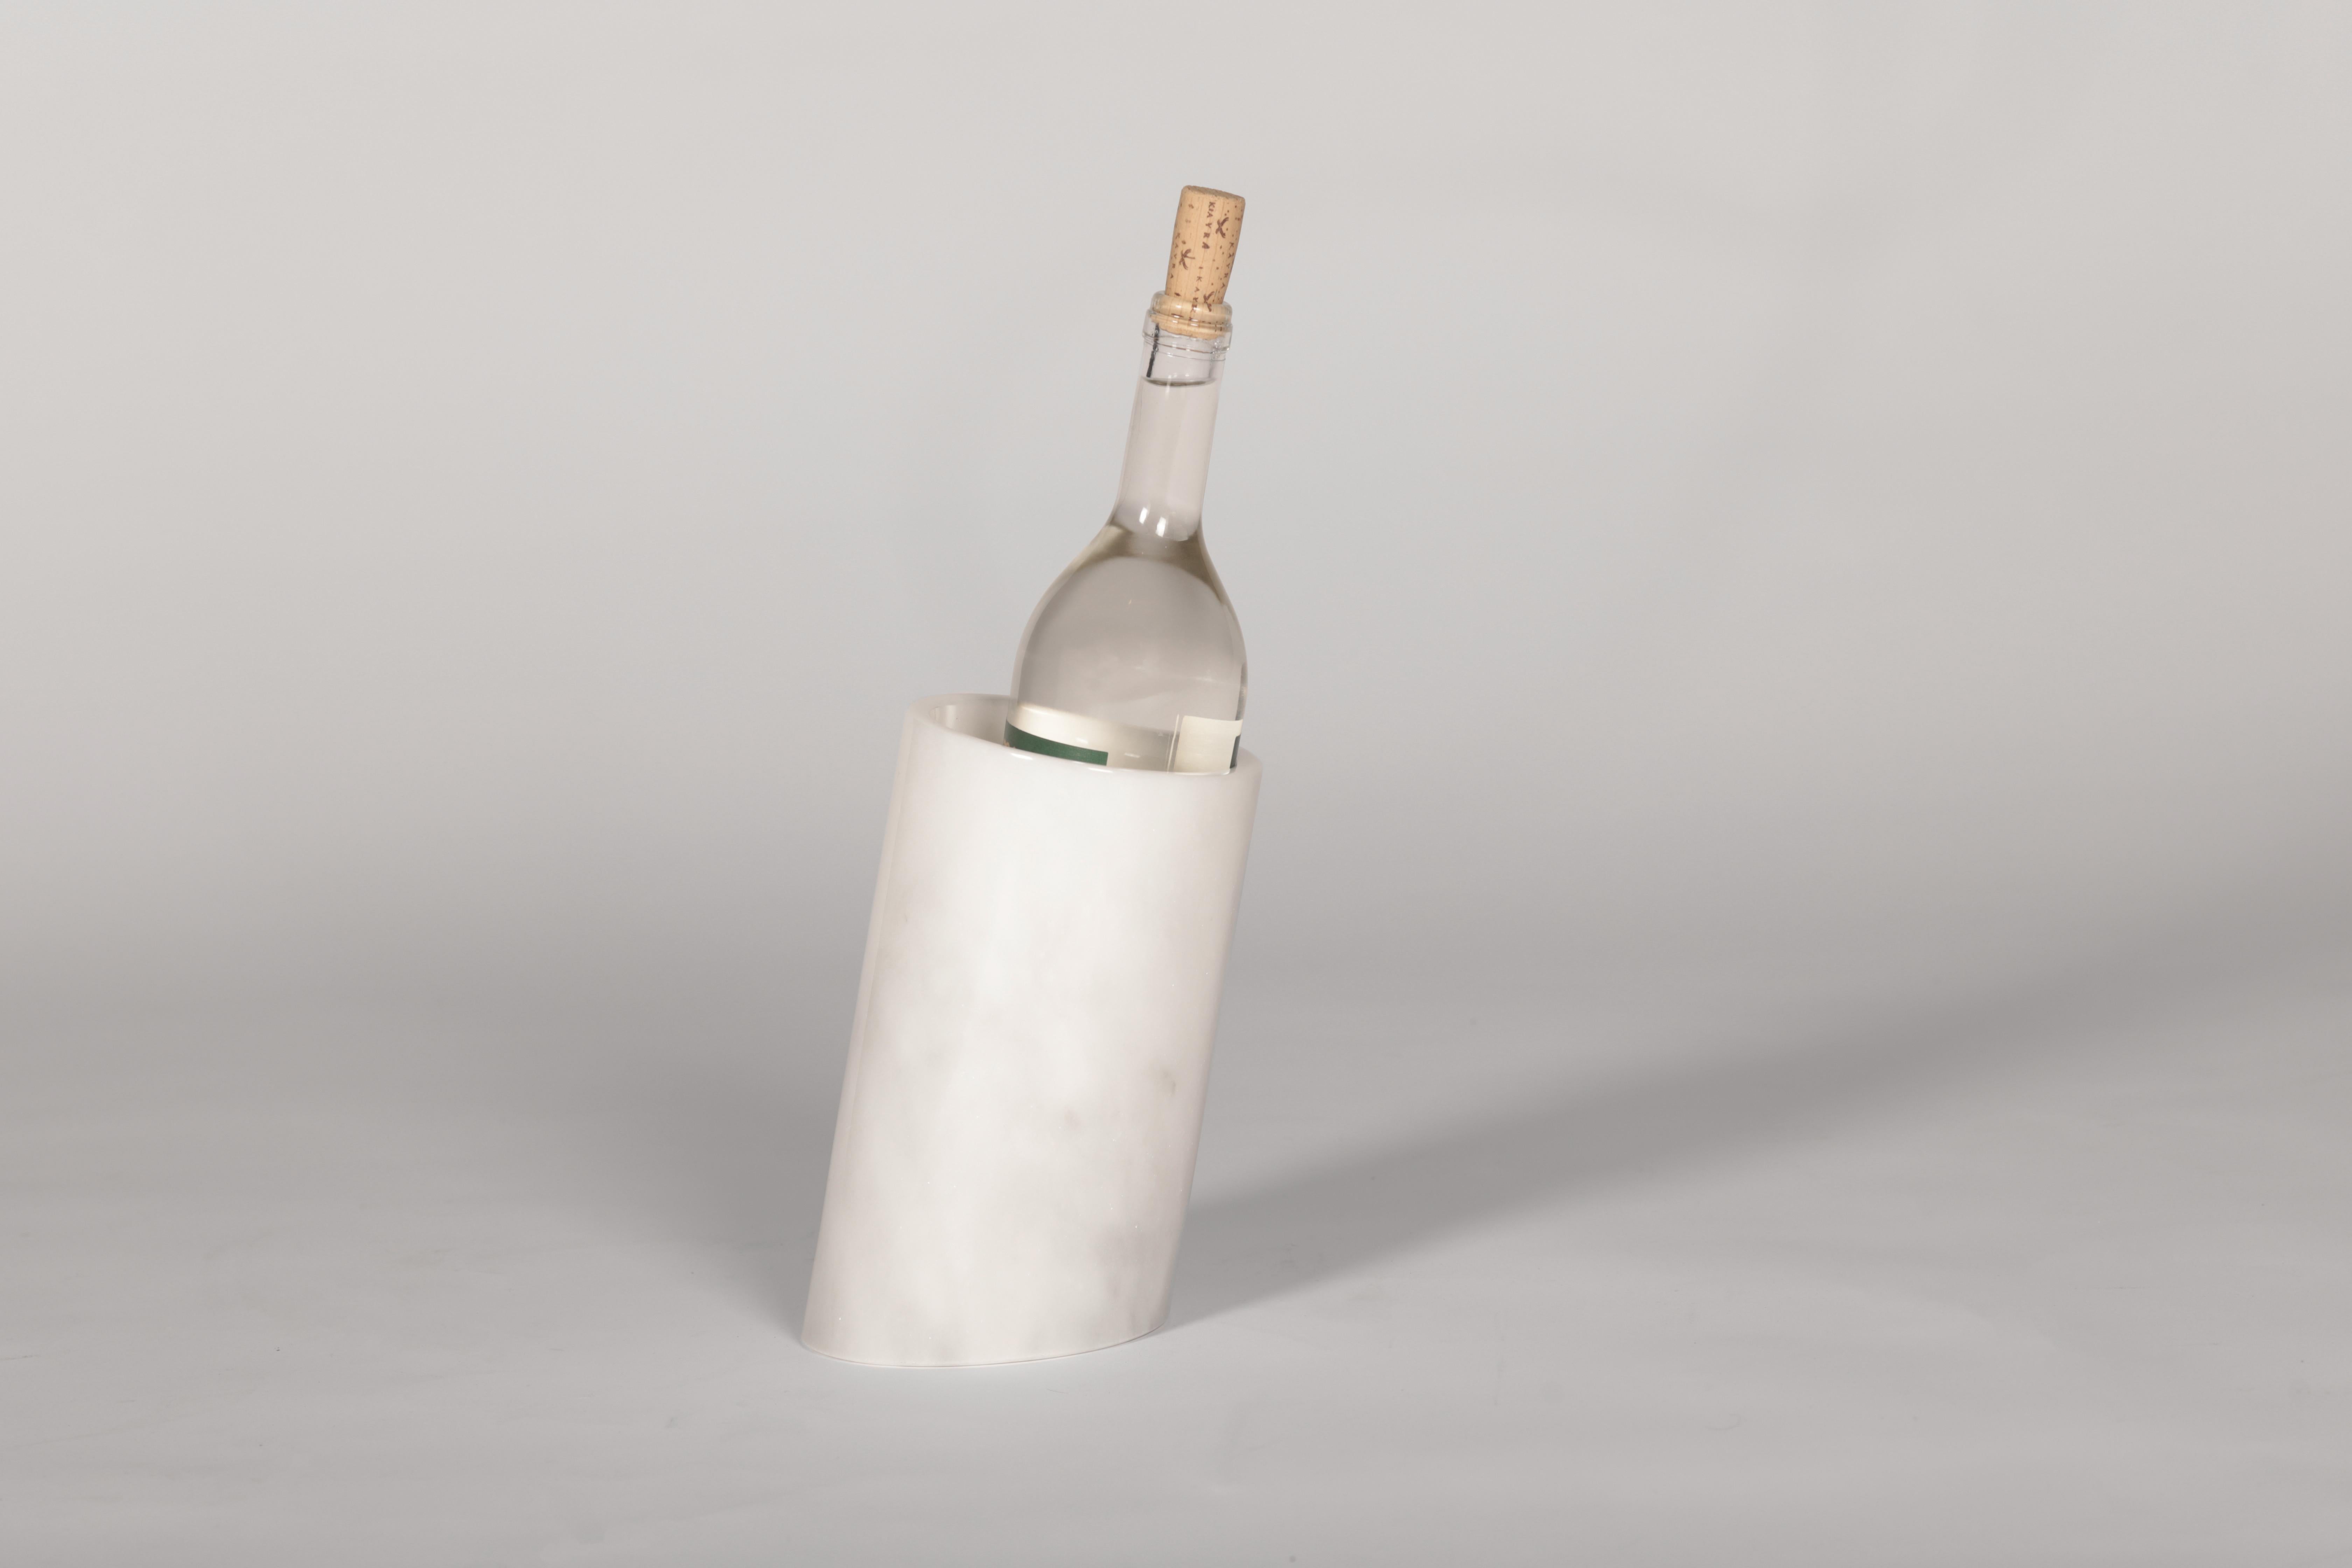 Elegant et utile, Botella est conçu pour garder vos bouteilles de liqueur au frais avec la froideur du marbre et les servir de manière élégante.

Le marbre étant un matériau naturel, les couleurs et les veines peuvent différer du produit acheté tel